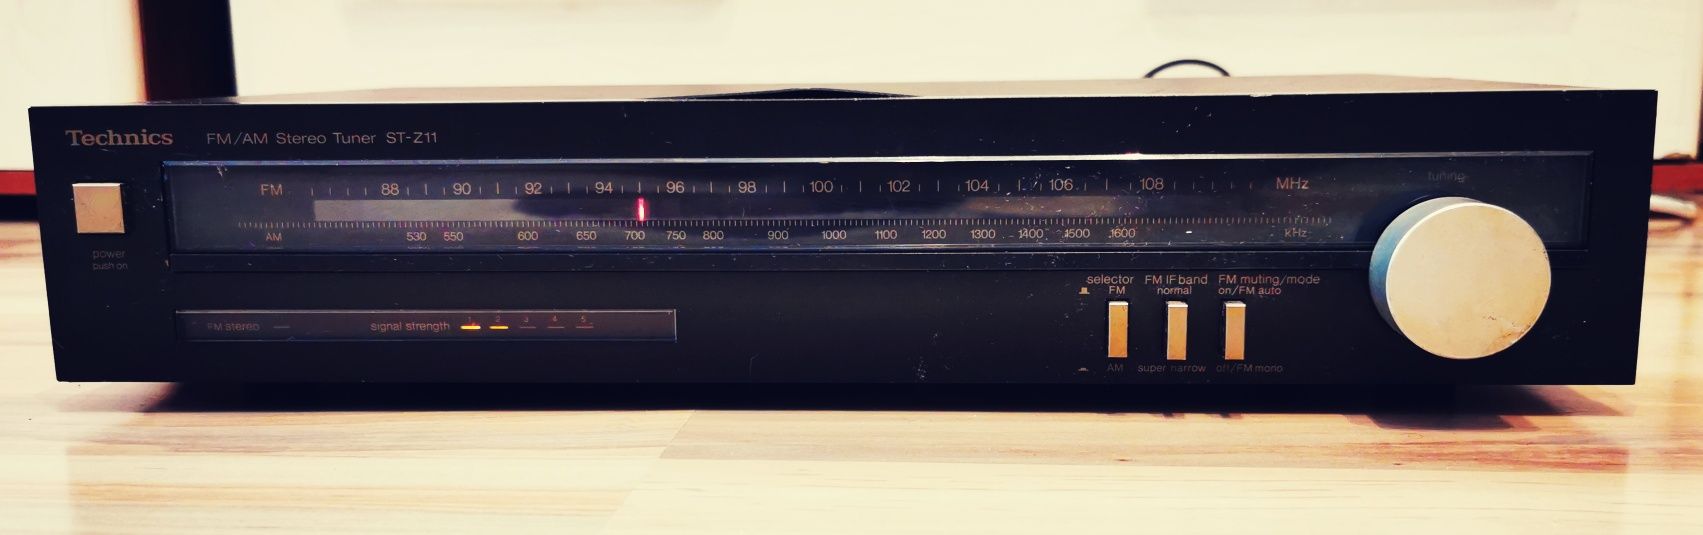 Technics ST-Z11 FM/AM Stereo Tuner retro vintage de colecție